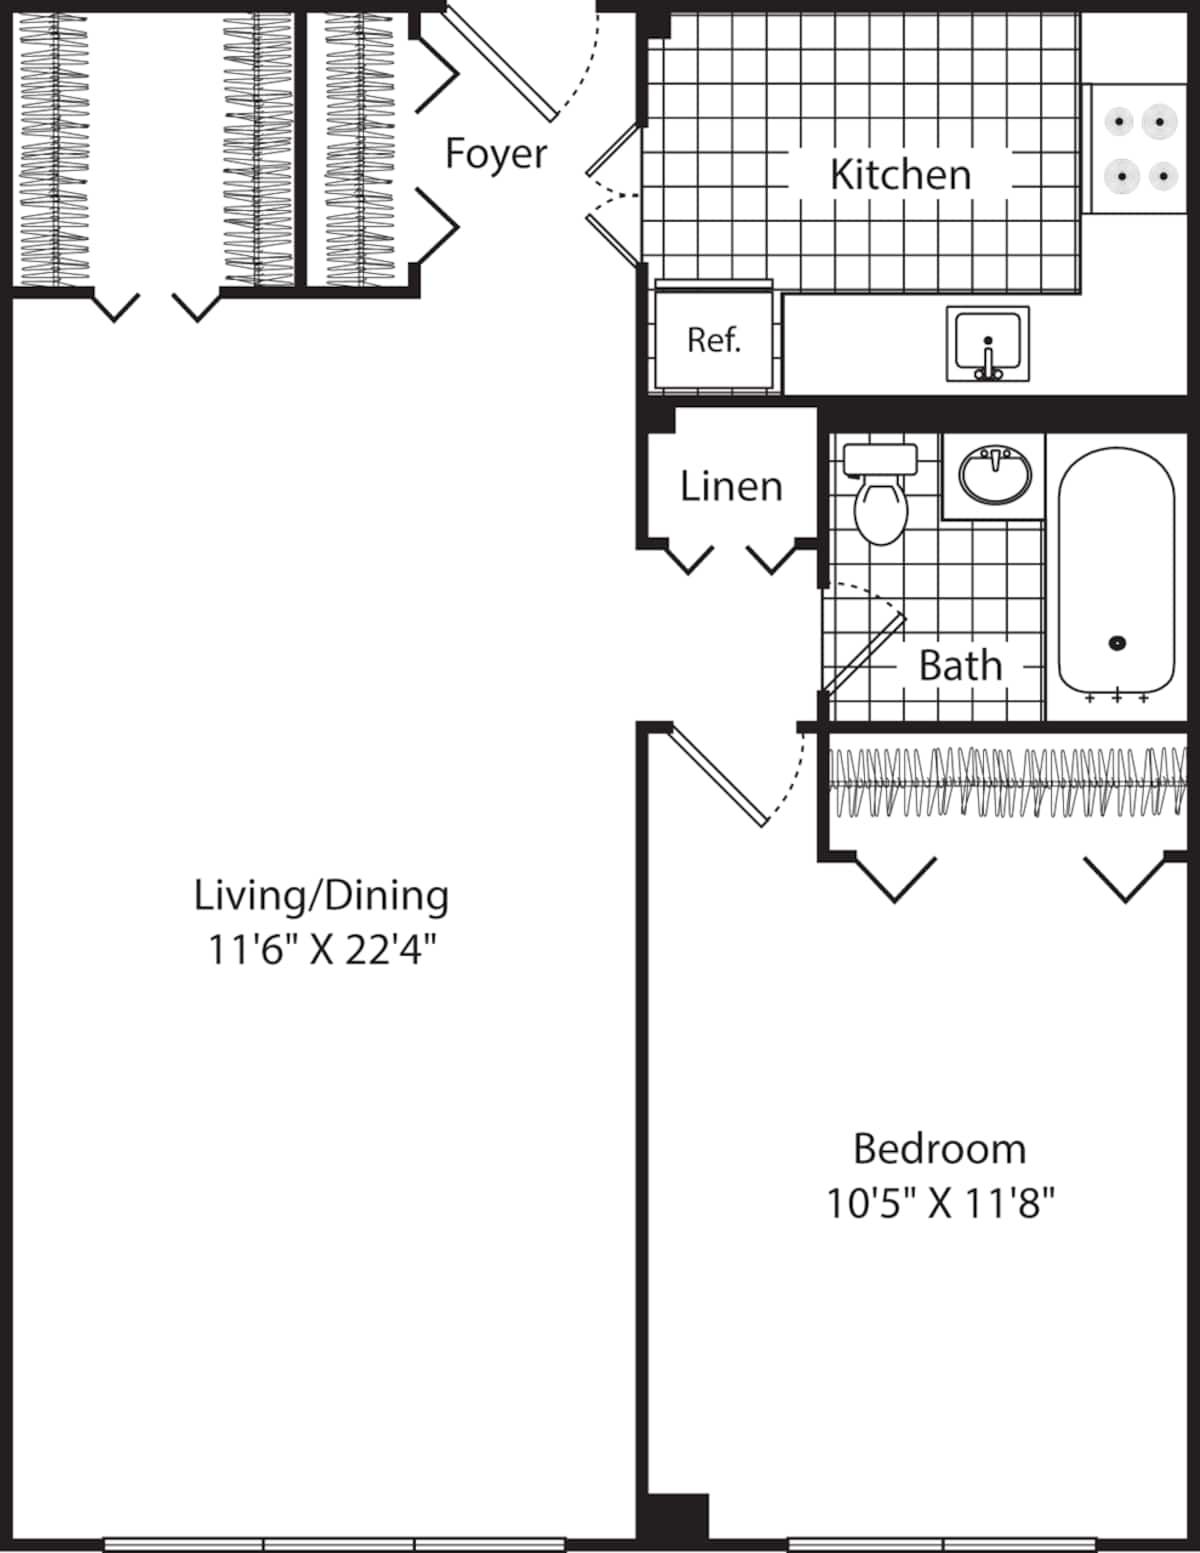 Floorplan diagram for The Seville, showing 1 bedroom